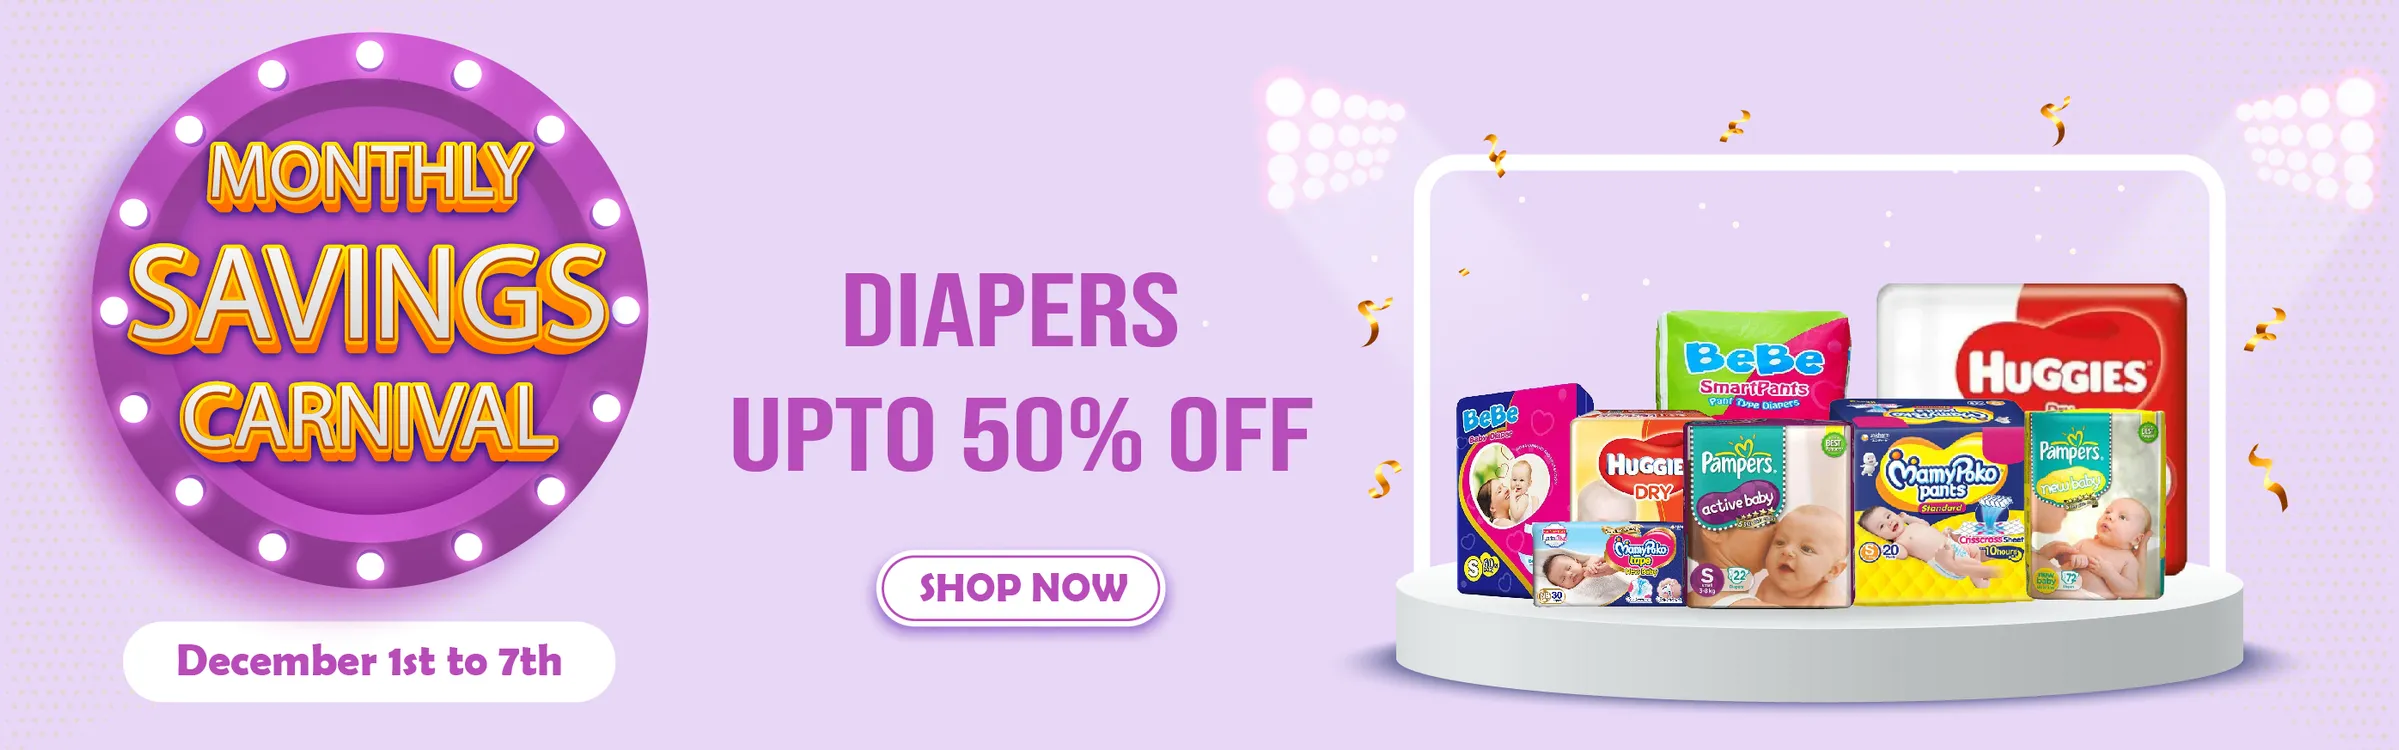 diapers savings carnival desk